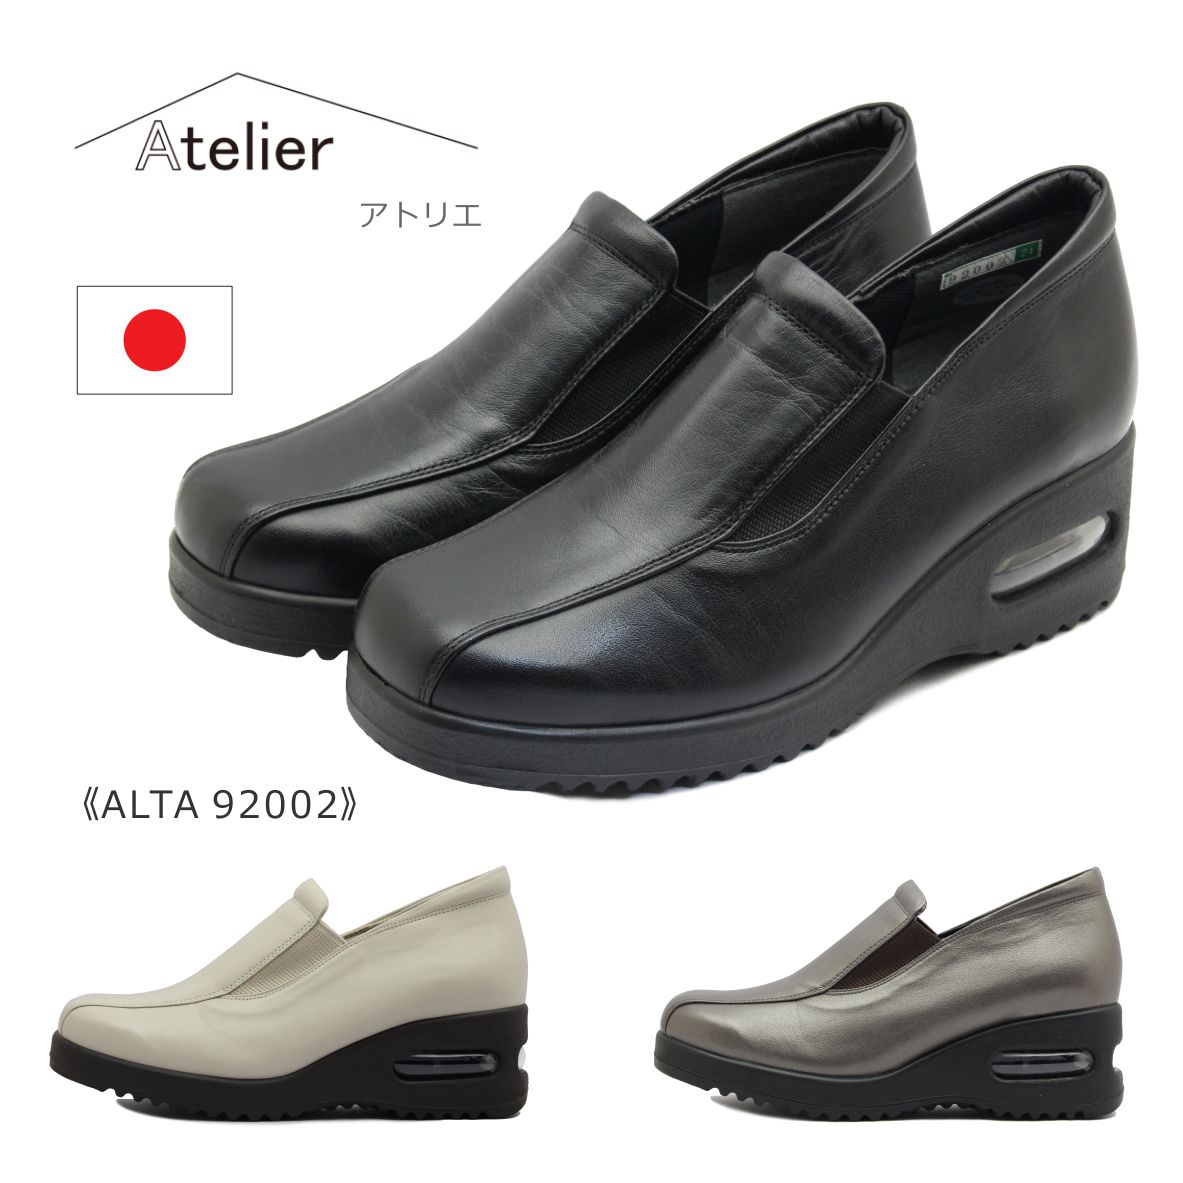 Atelier アトリエ レディース シューズ ALTA 92002 スリッポン 日本製 靴 黒 ブラック ブロンズ ベージュ